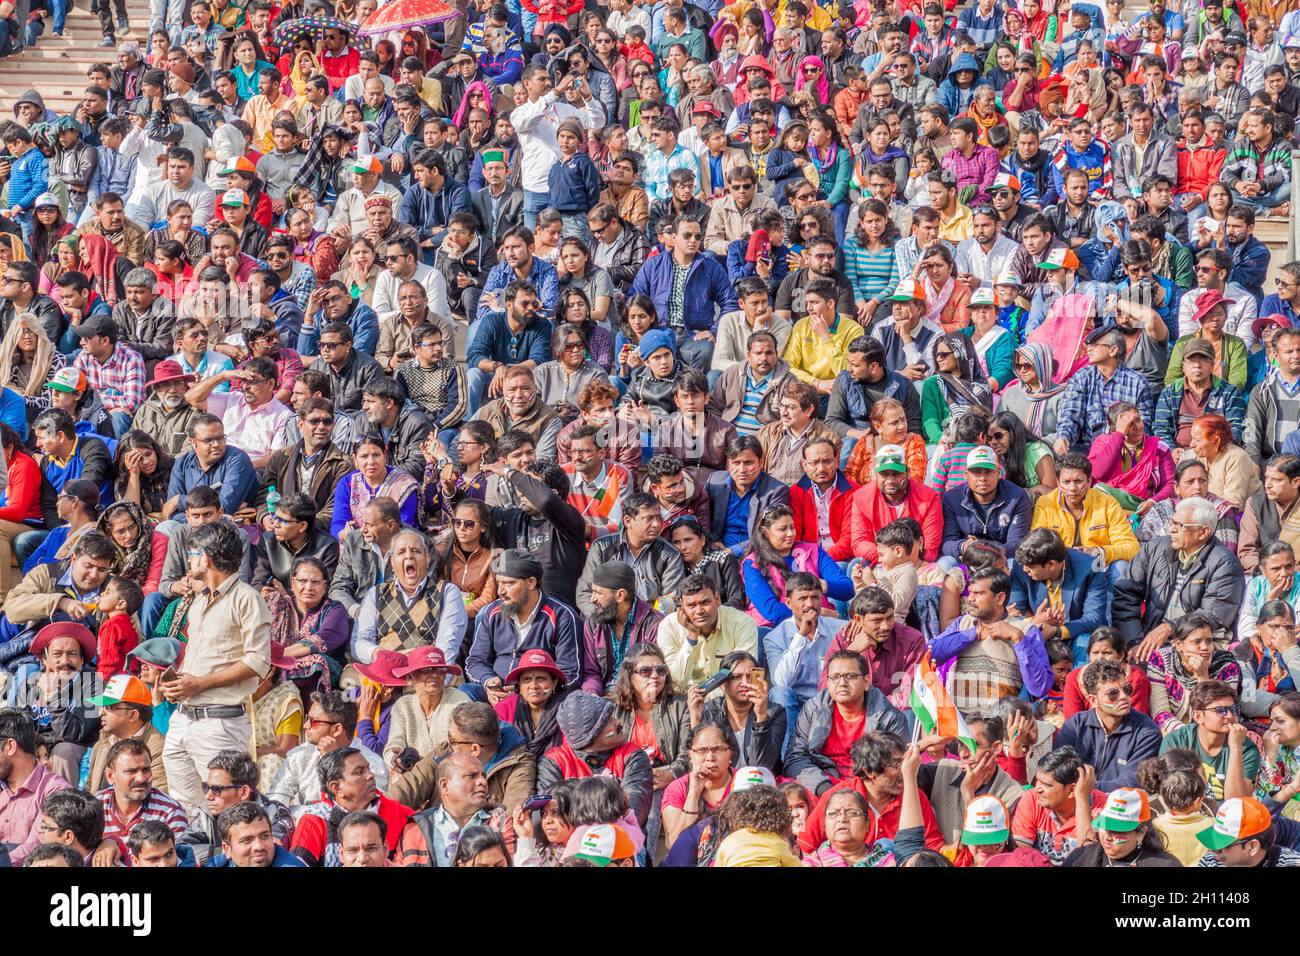 WAGAH, INDE - 26 JANVIER 2017 : des spectateurs indiens assistent à la cérémonie militaire à la frontière entre l'Inde et le Pakistan, à Wagah, au Punjab, en Inde. Banque D'Images